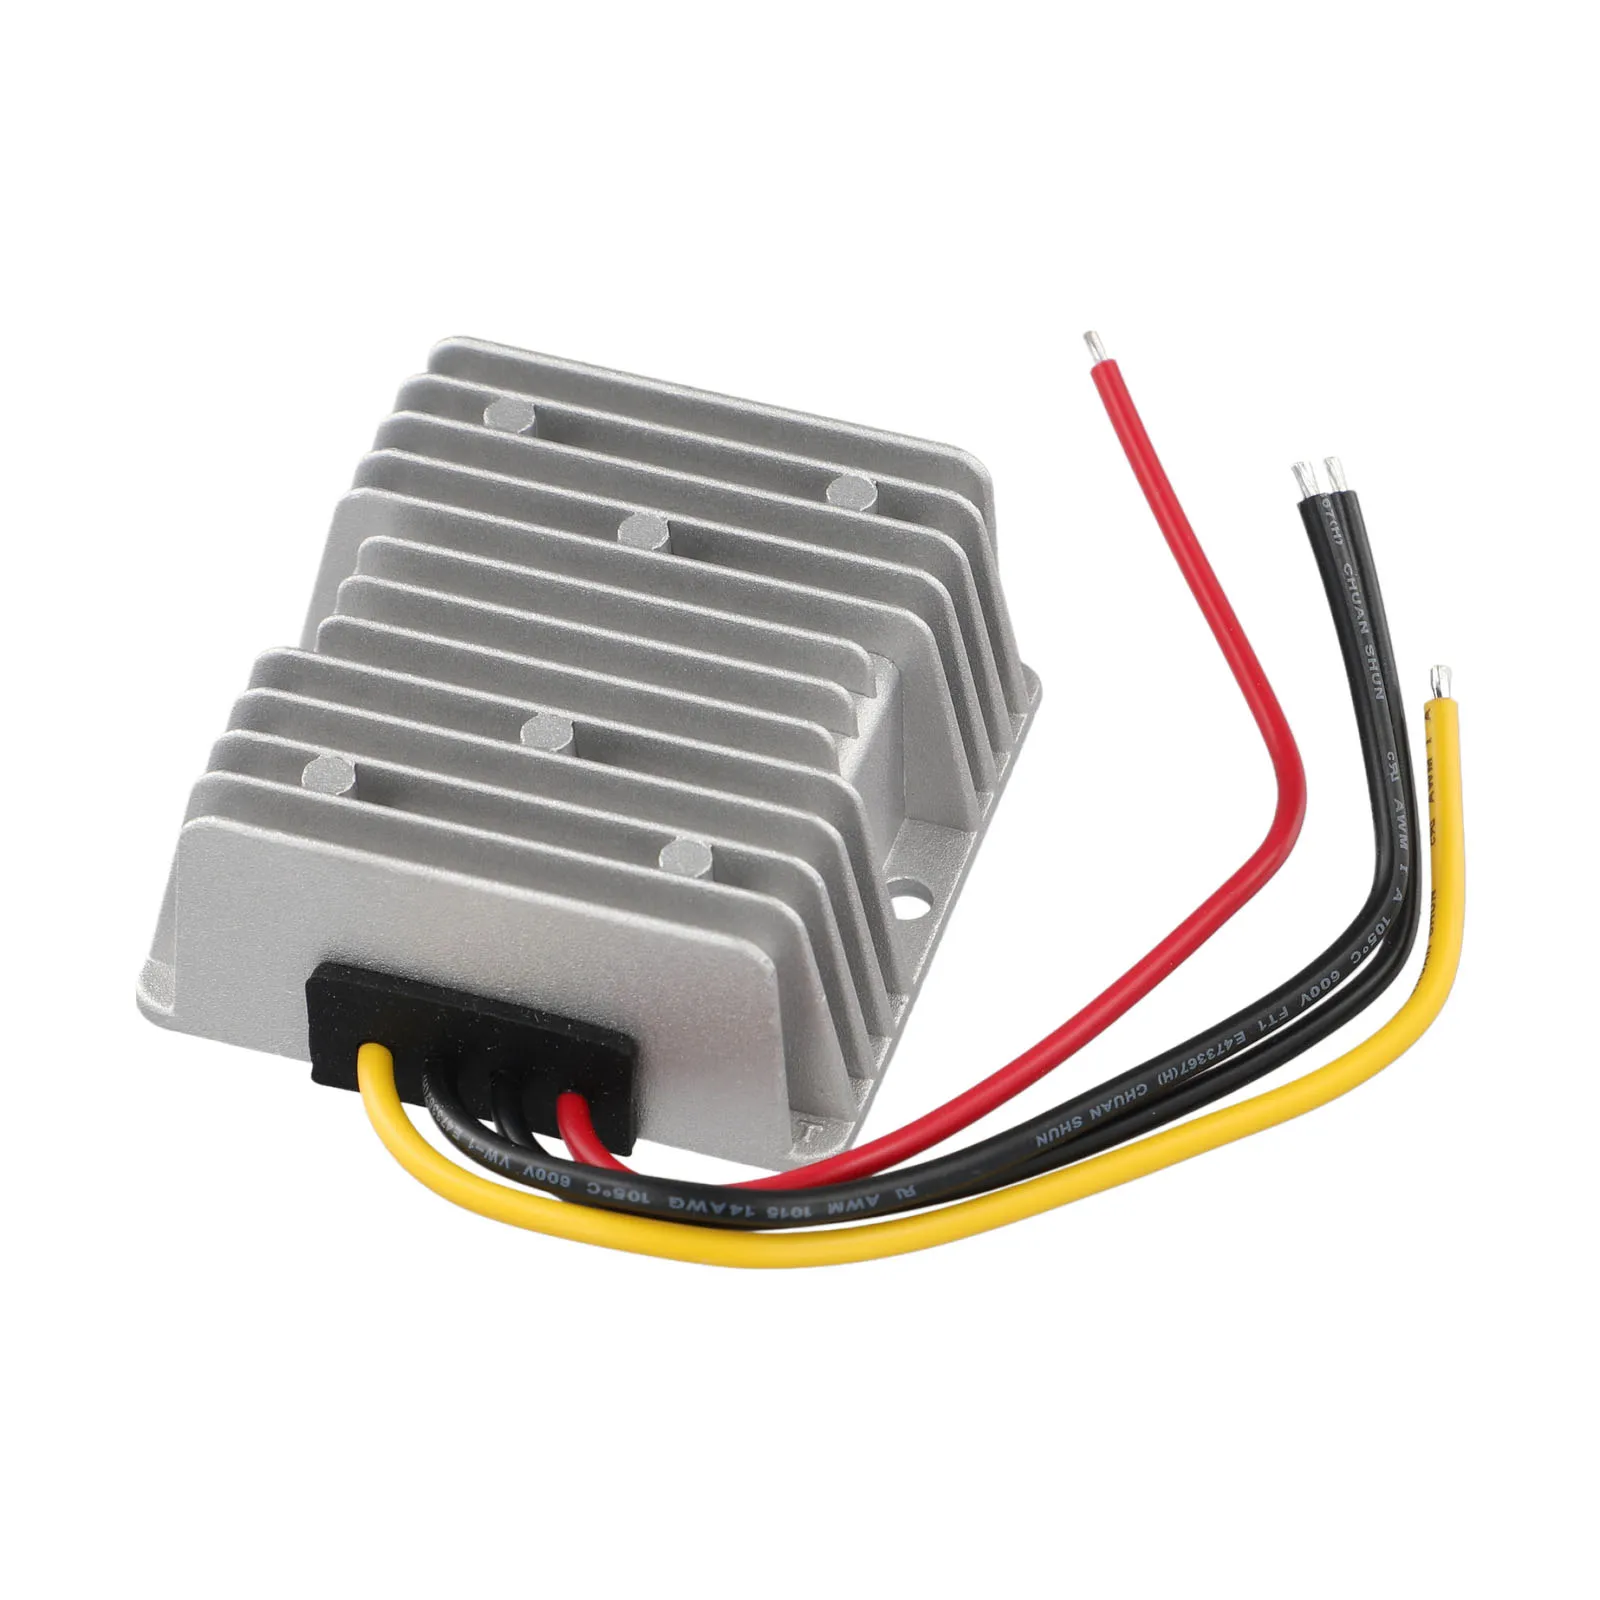 

High Quality Converter For Milwaukee 1 Pcs 180W Battery Dock Converter DIY Adapter For 18Vto12V Intelligent Chip